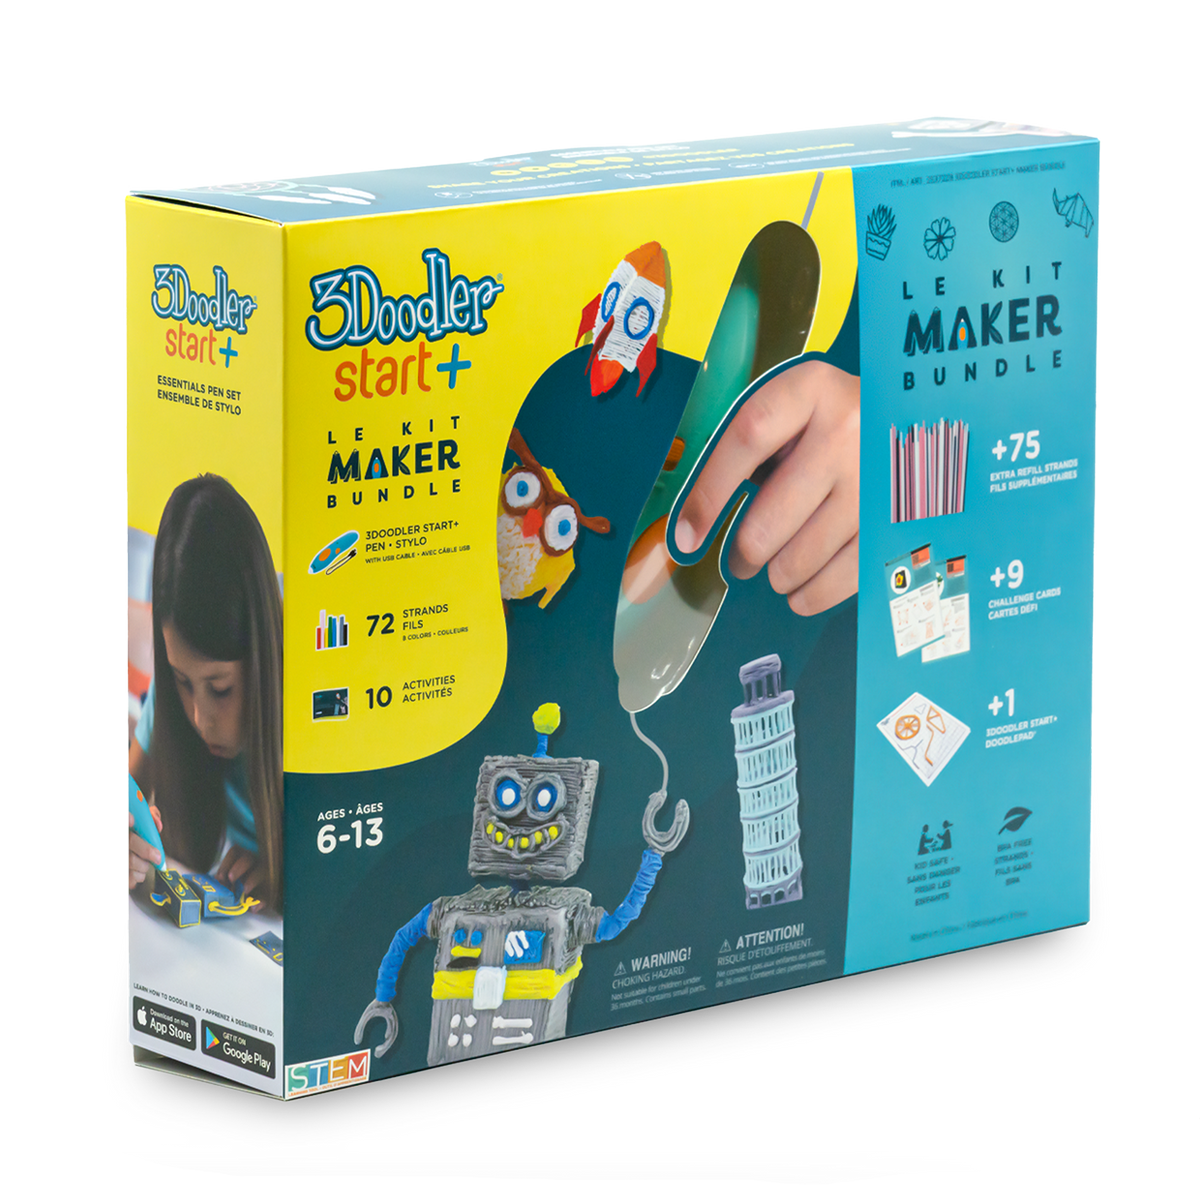 3Doodler Start+ Maker Bundle